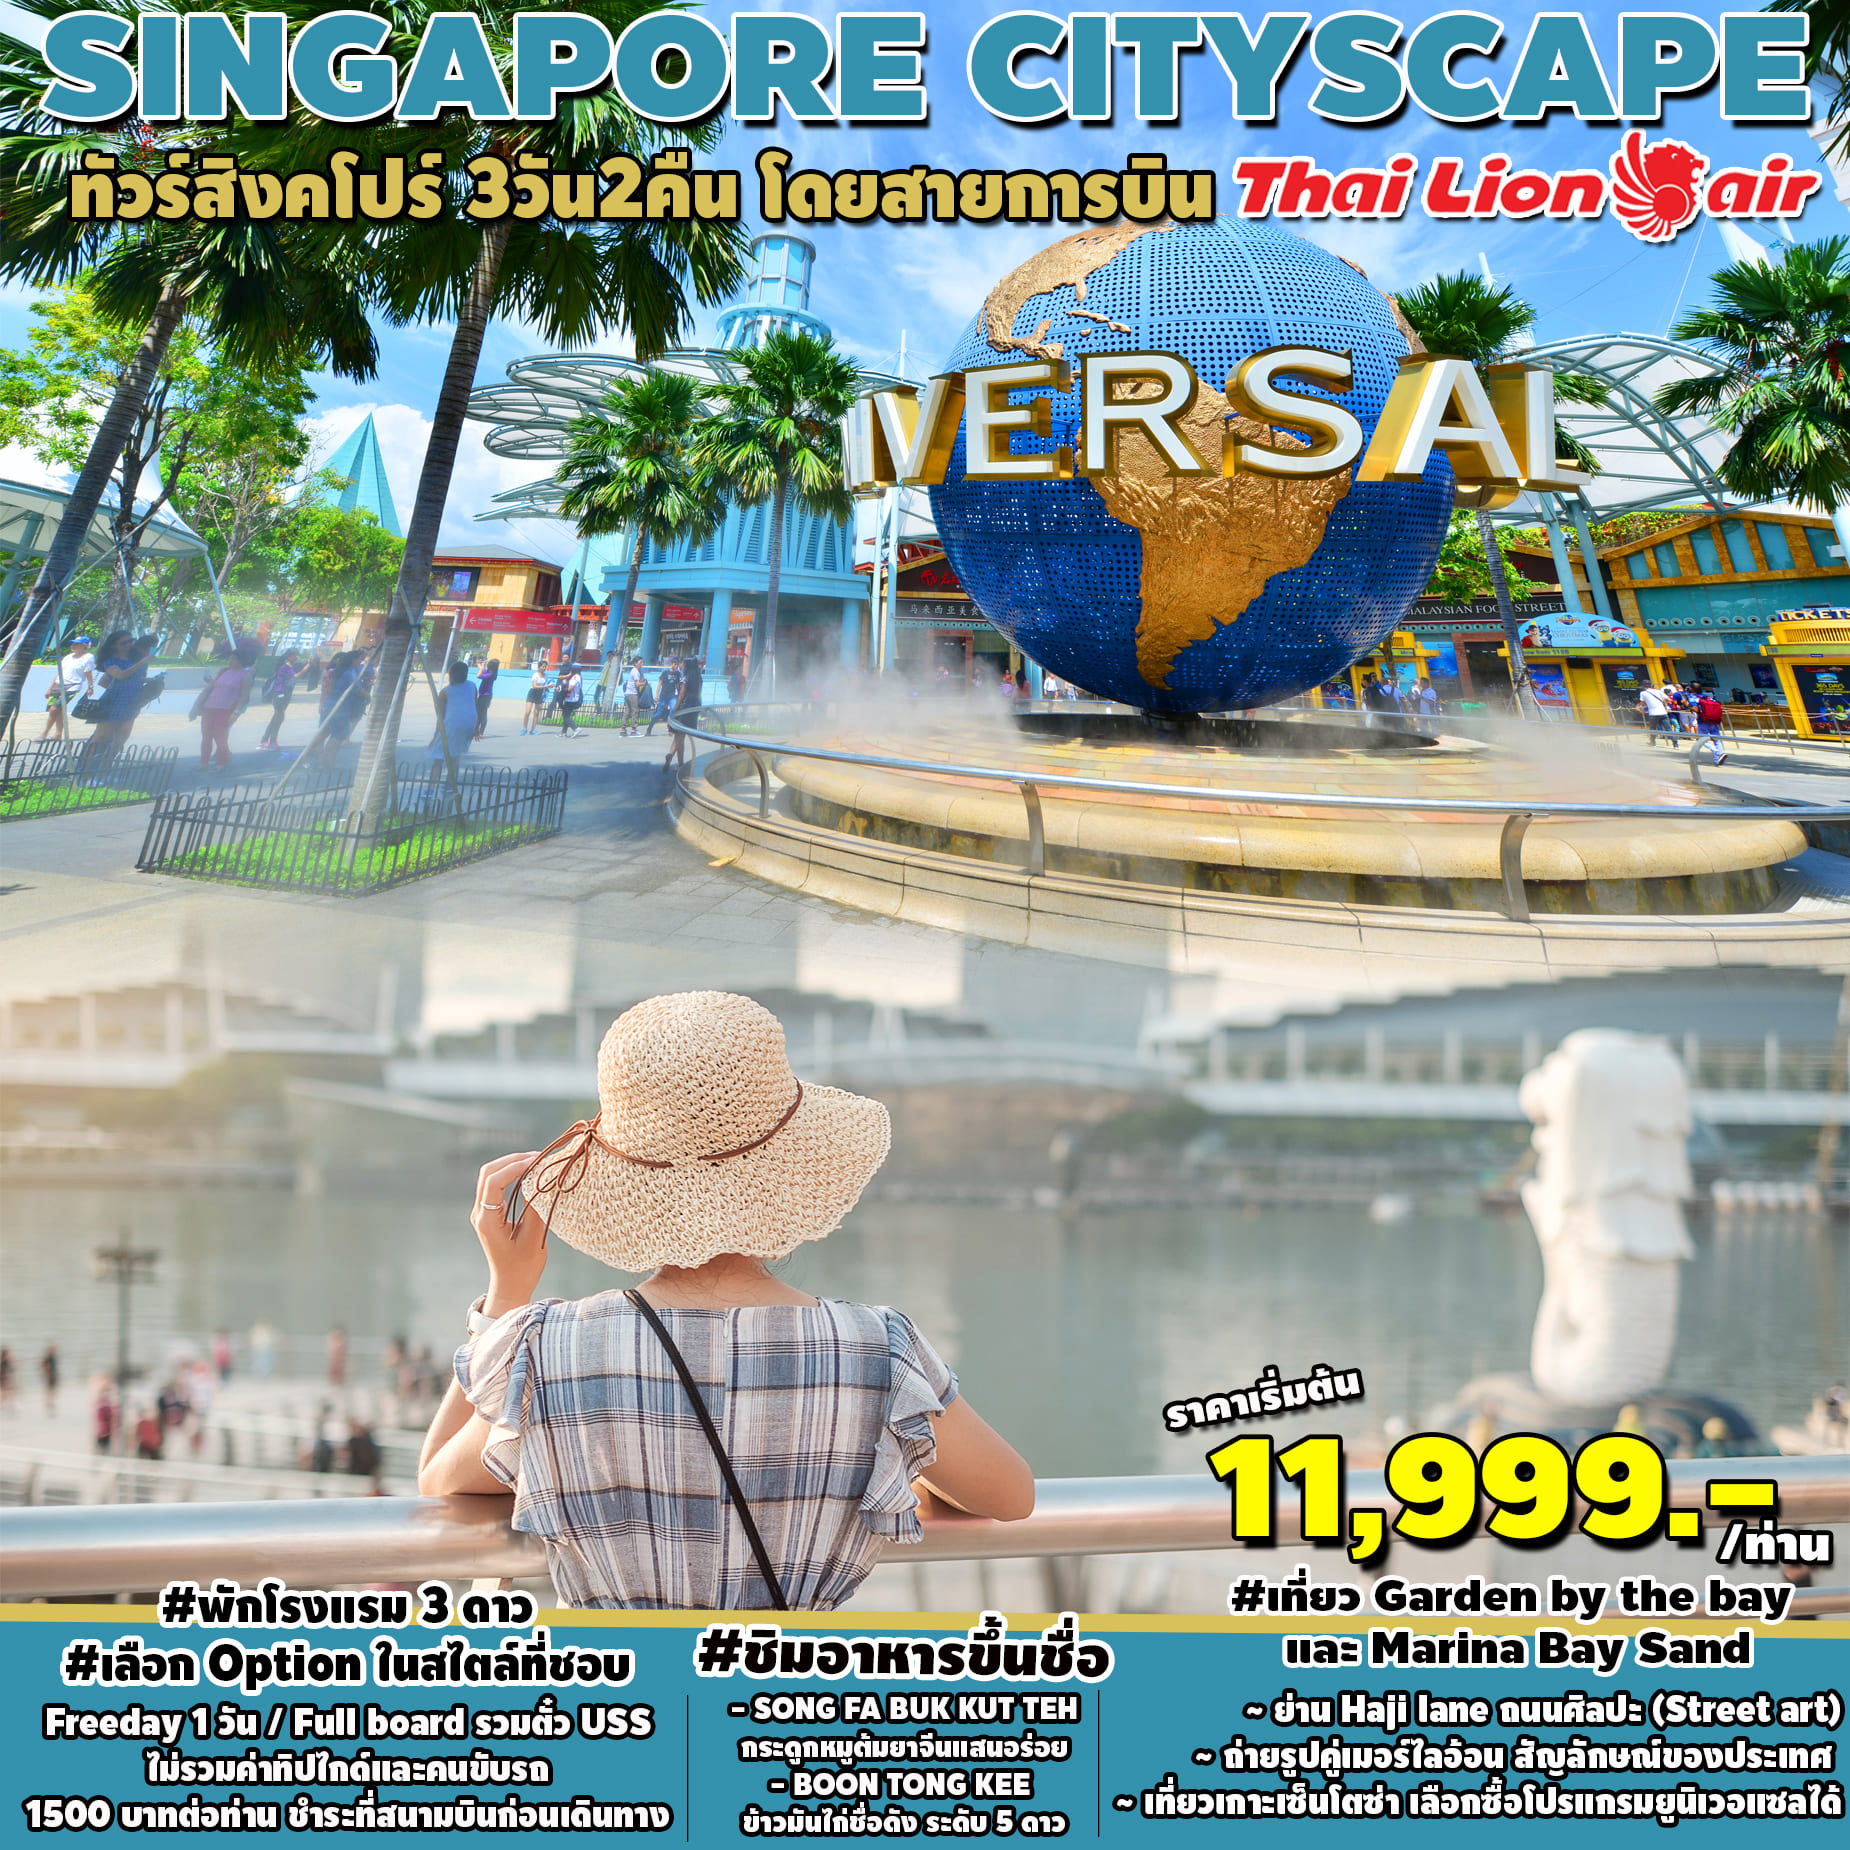 ทัวร์สิงคโปร์ SINGAPORE CITYSCAPE 3D2 APR-OCT 2023